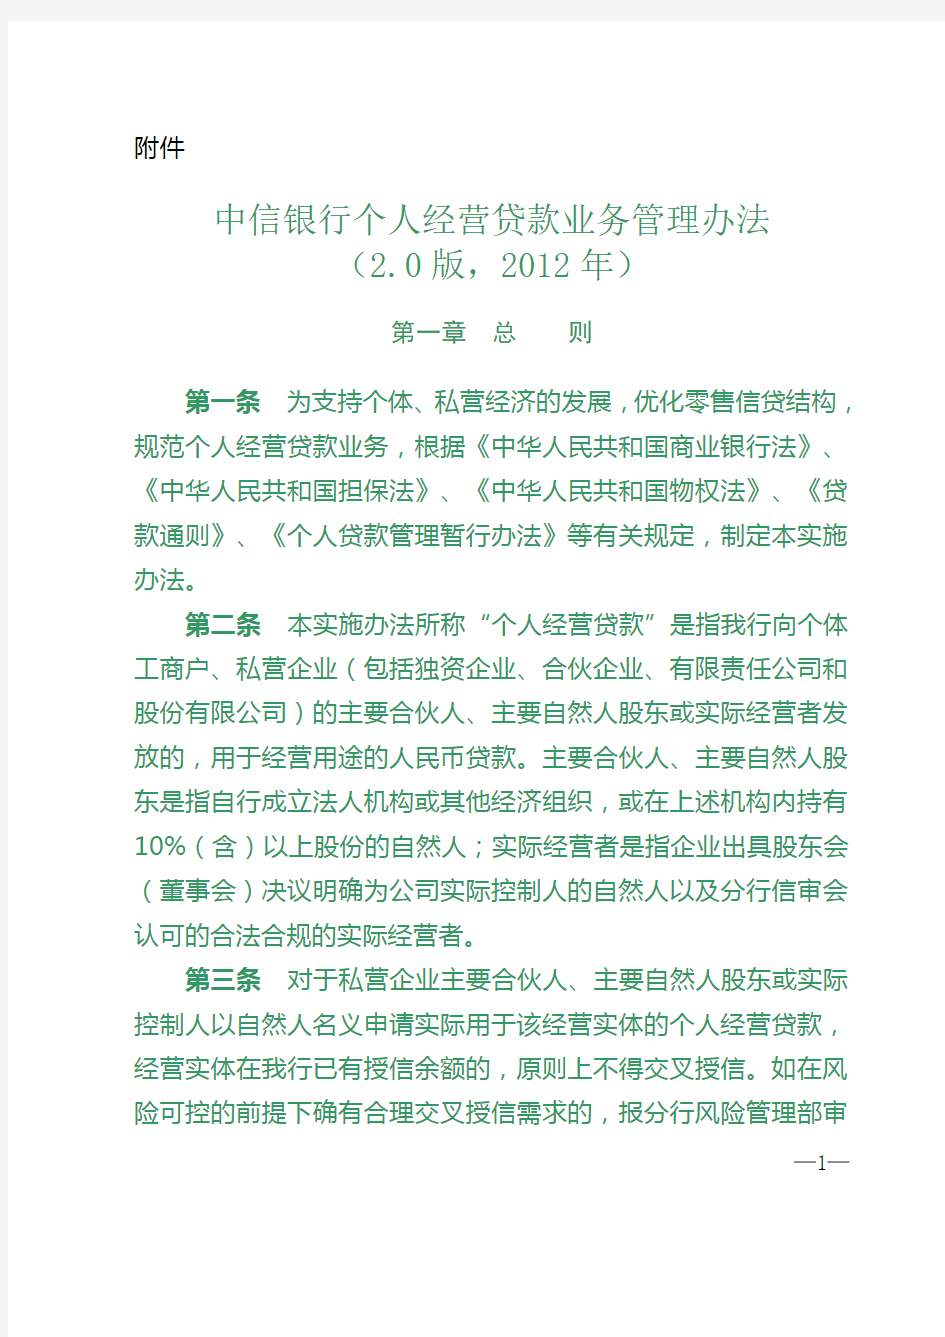 中信银行个人经营贷款业务管理办法2.0版2012年 2